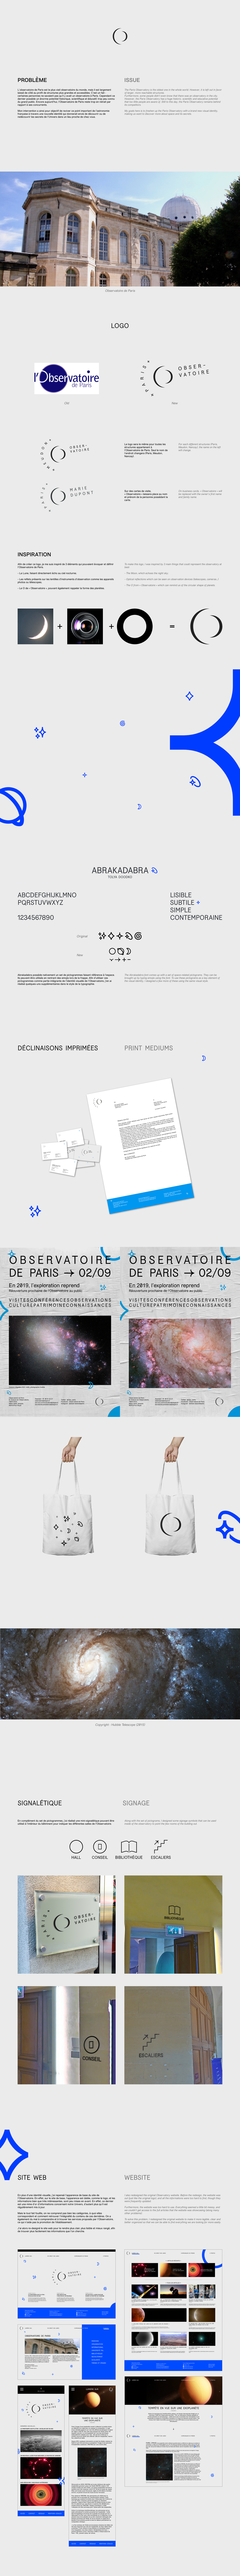 Observatoire de Paris - Lycée Jacques Prévert - Graphic Design - Branding - Webdesign - 2019 © Morgan Gomez